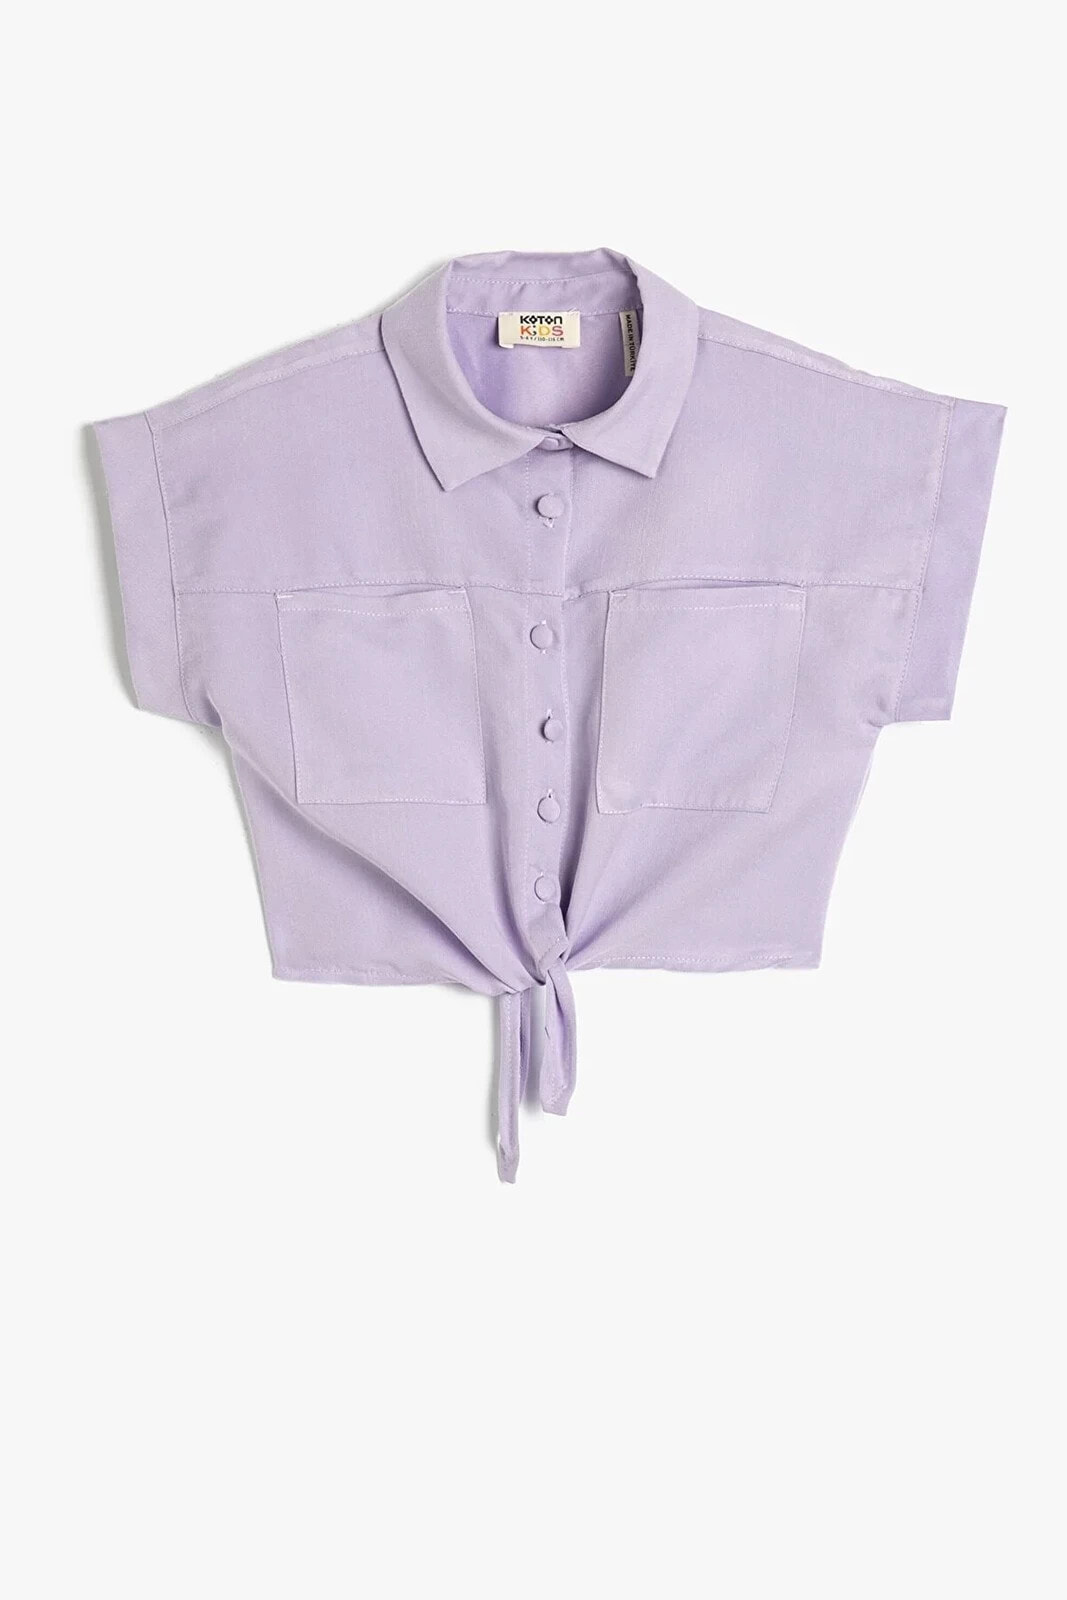 Kız Çocuk Önden Bağlama Detaylı Kısa Kollu Cepli Modal Kumaş Crop Gömlek 3skg60160aw